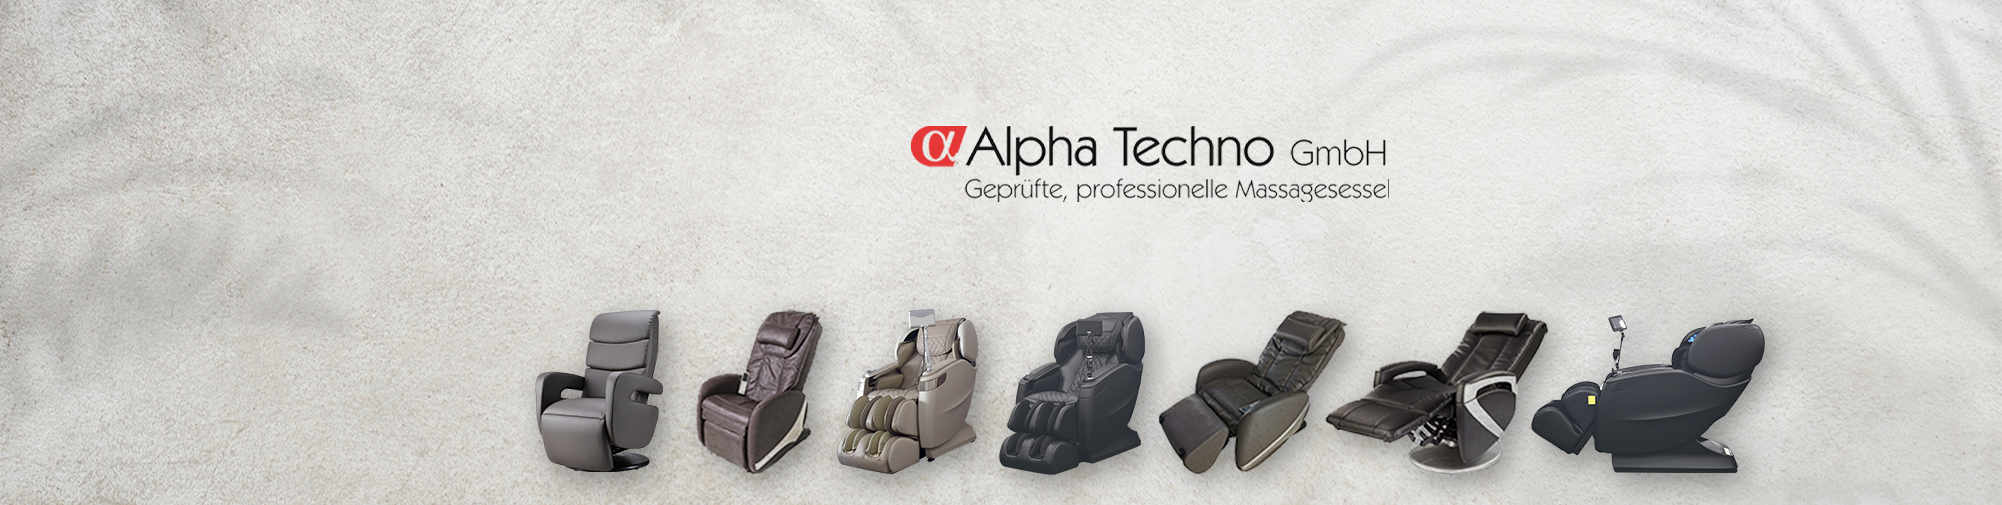 الفا تکنو - شماره 1 اروپا | ماساژ صندلی جهان